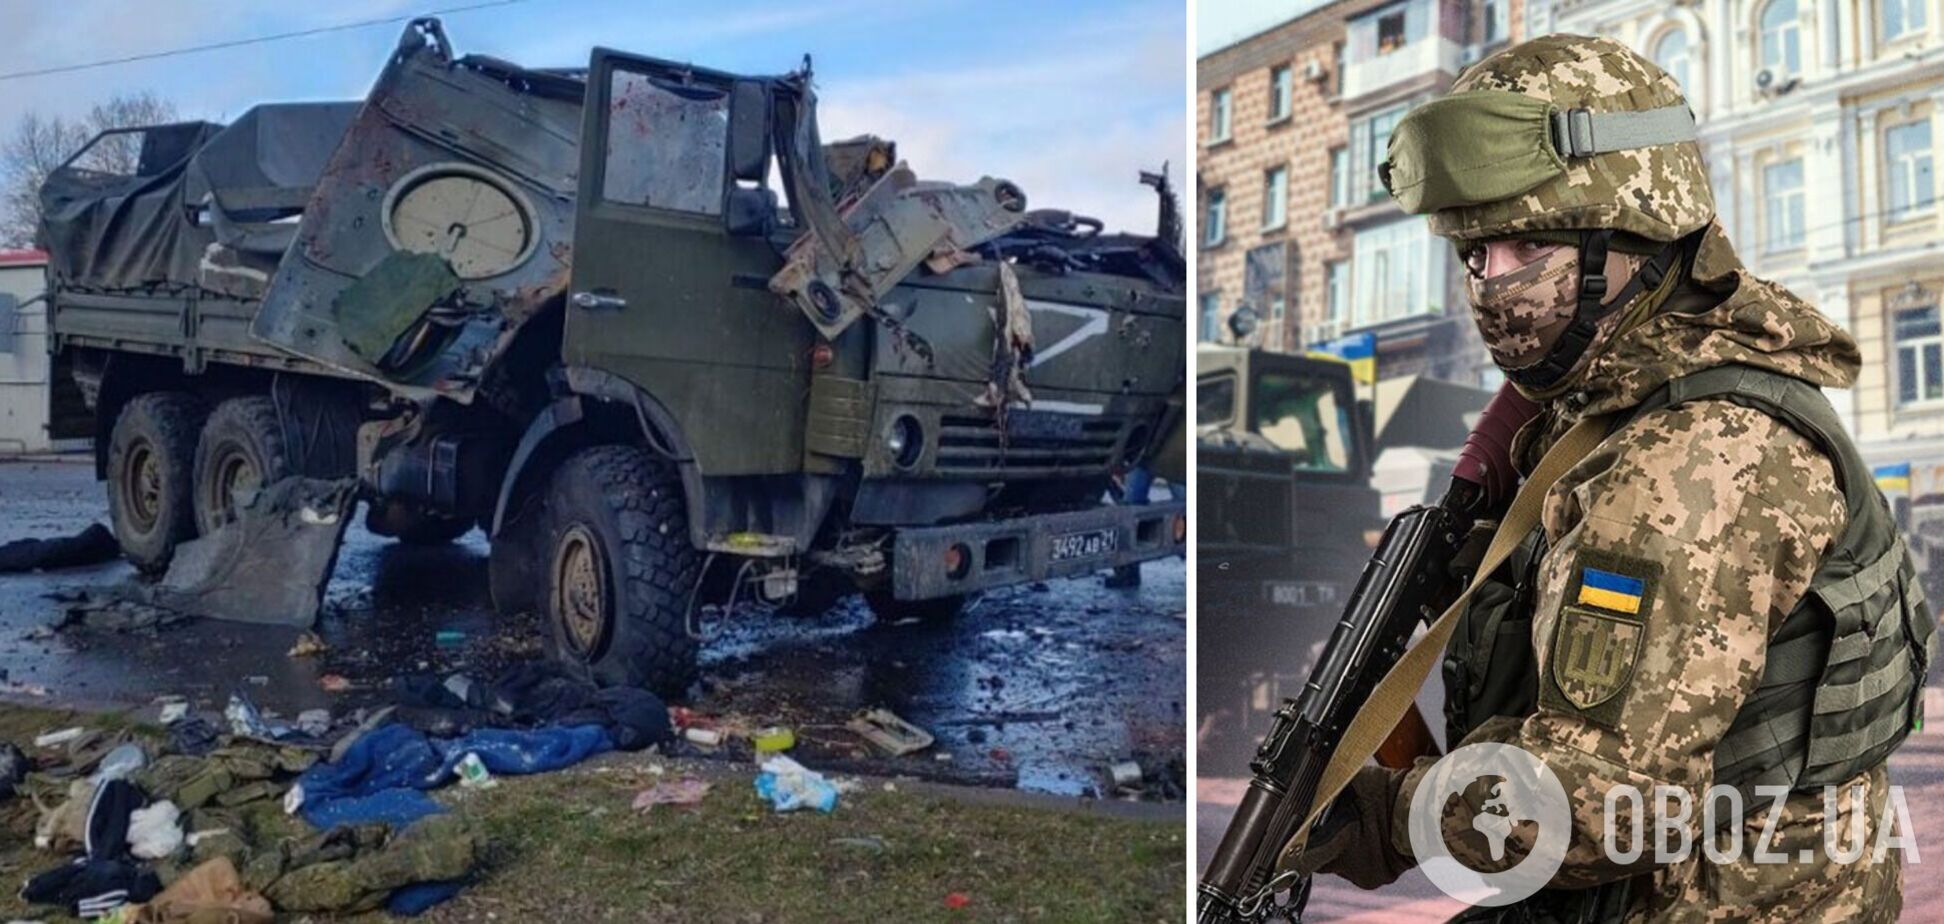 'Живемо, як бомжі, бойового настрою ніякого': окупант поскаржився на 'окопні умови' в Україні. Аудіоперехоплення